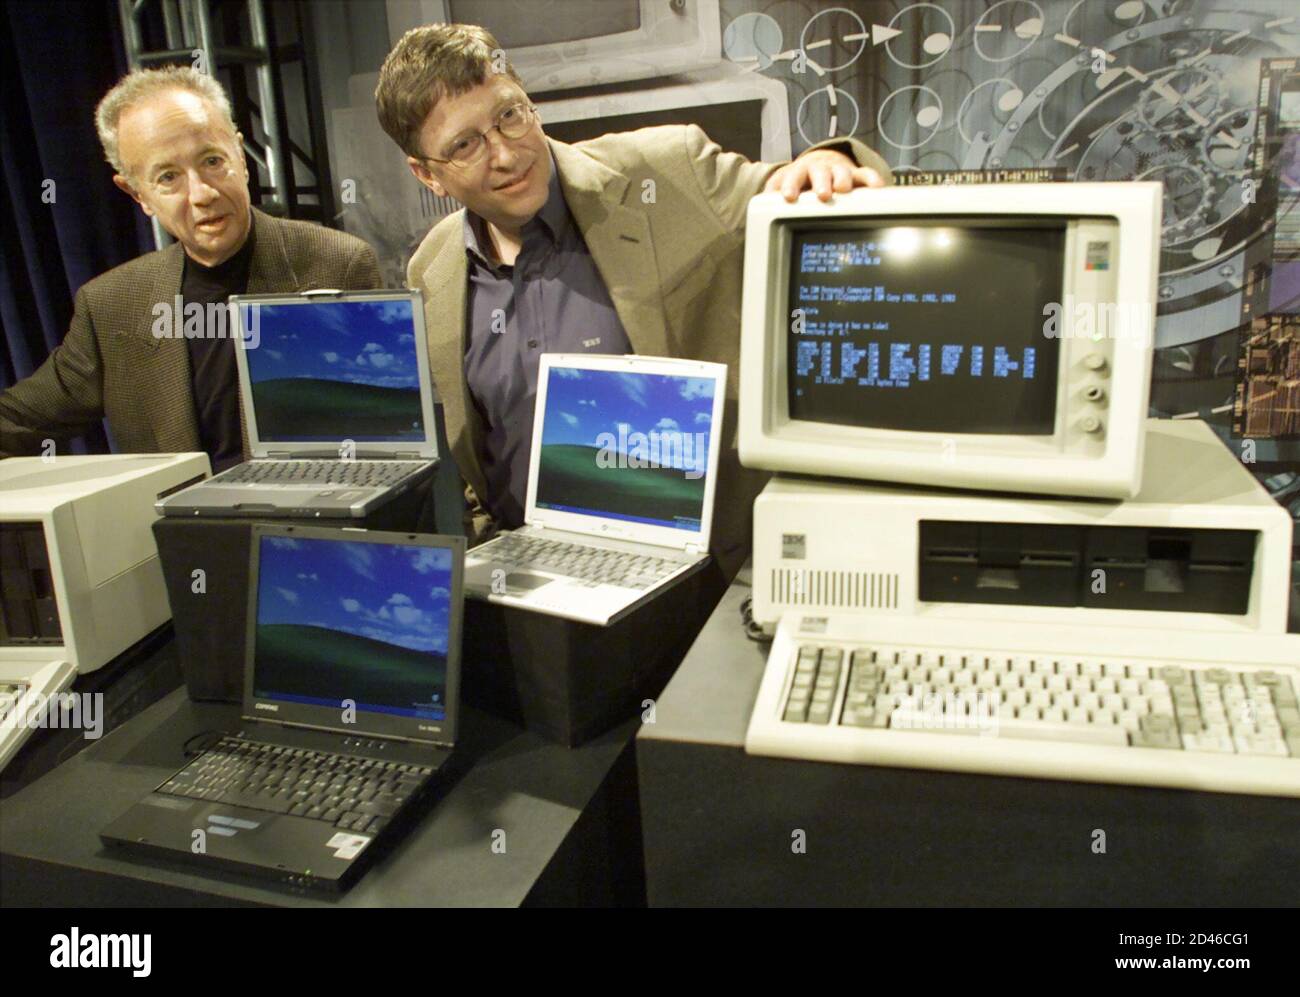 Разработчик операционной системы. IBM PC 5150. Билл Гейтс 2000. Билл Гейтс 2001. Первую модель персонального компьютера — IBM 5150.